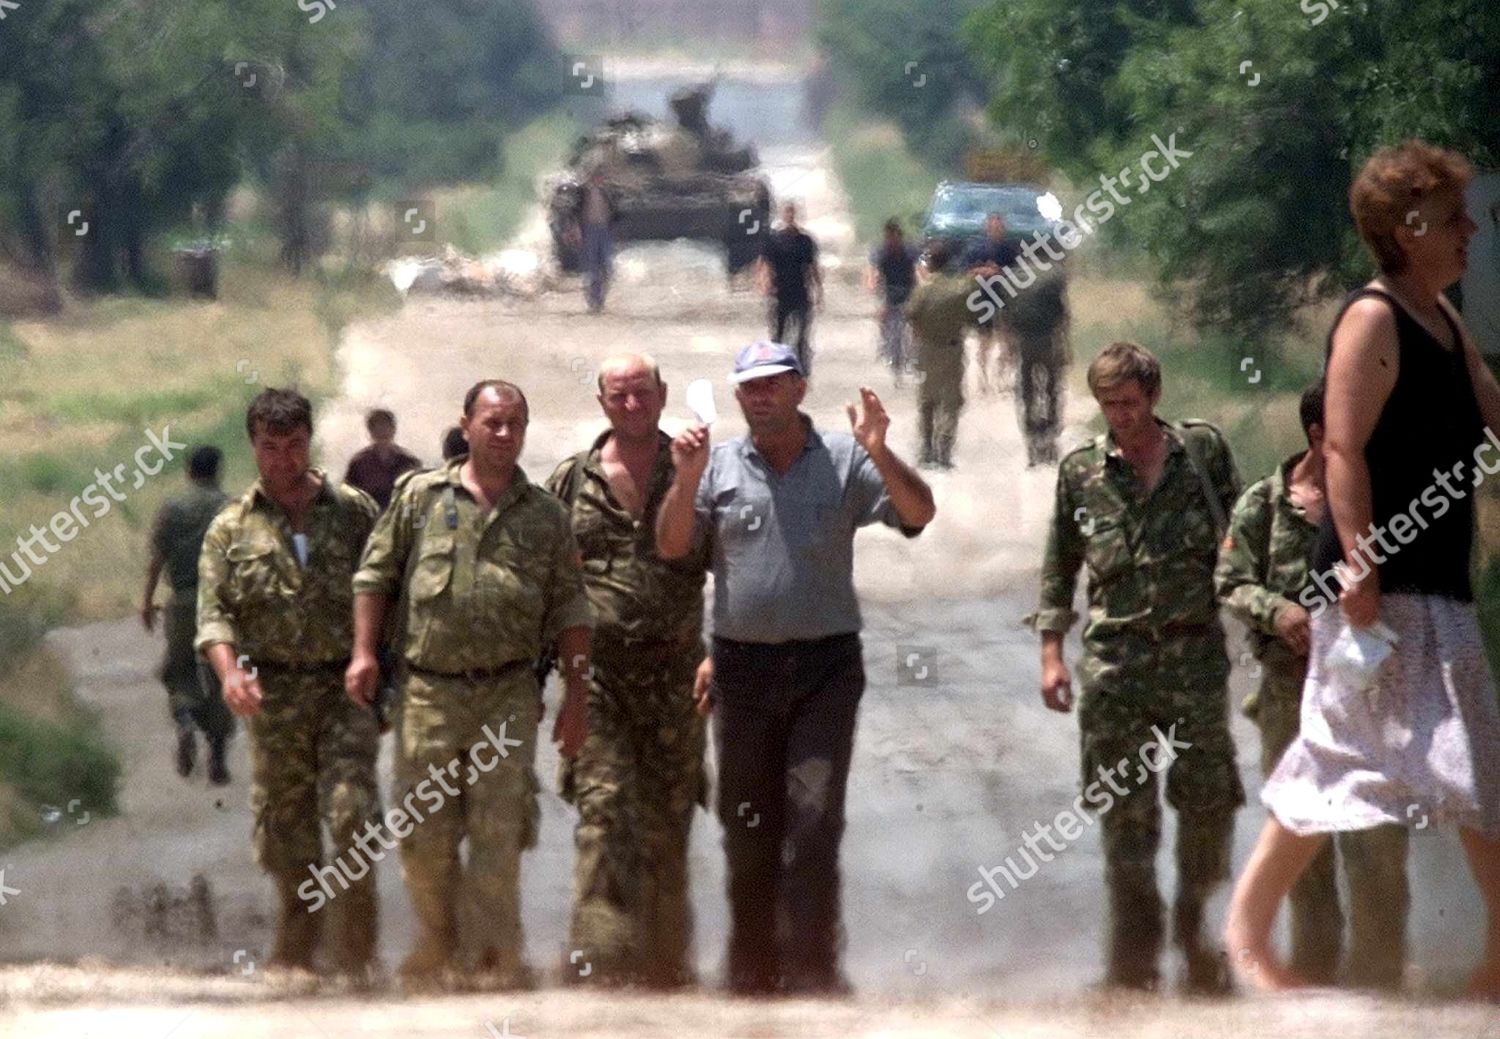 macedonian-reservists-jul-2001-shutterstock-editorial-8482560a.jpg